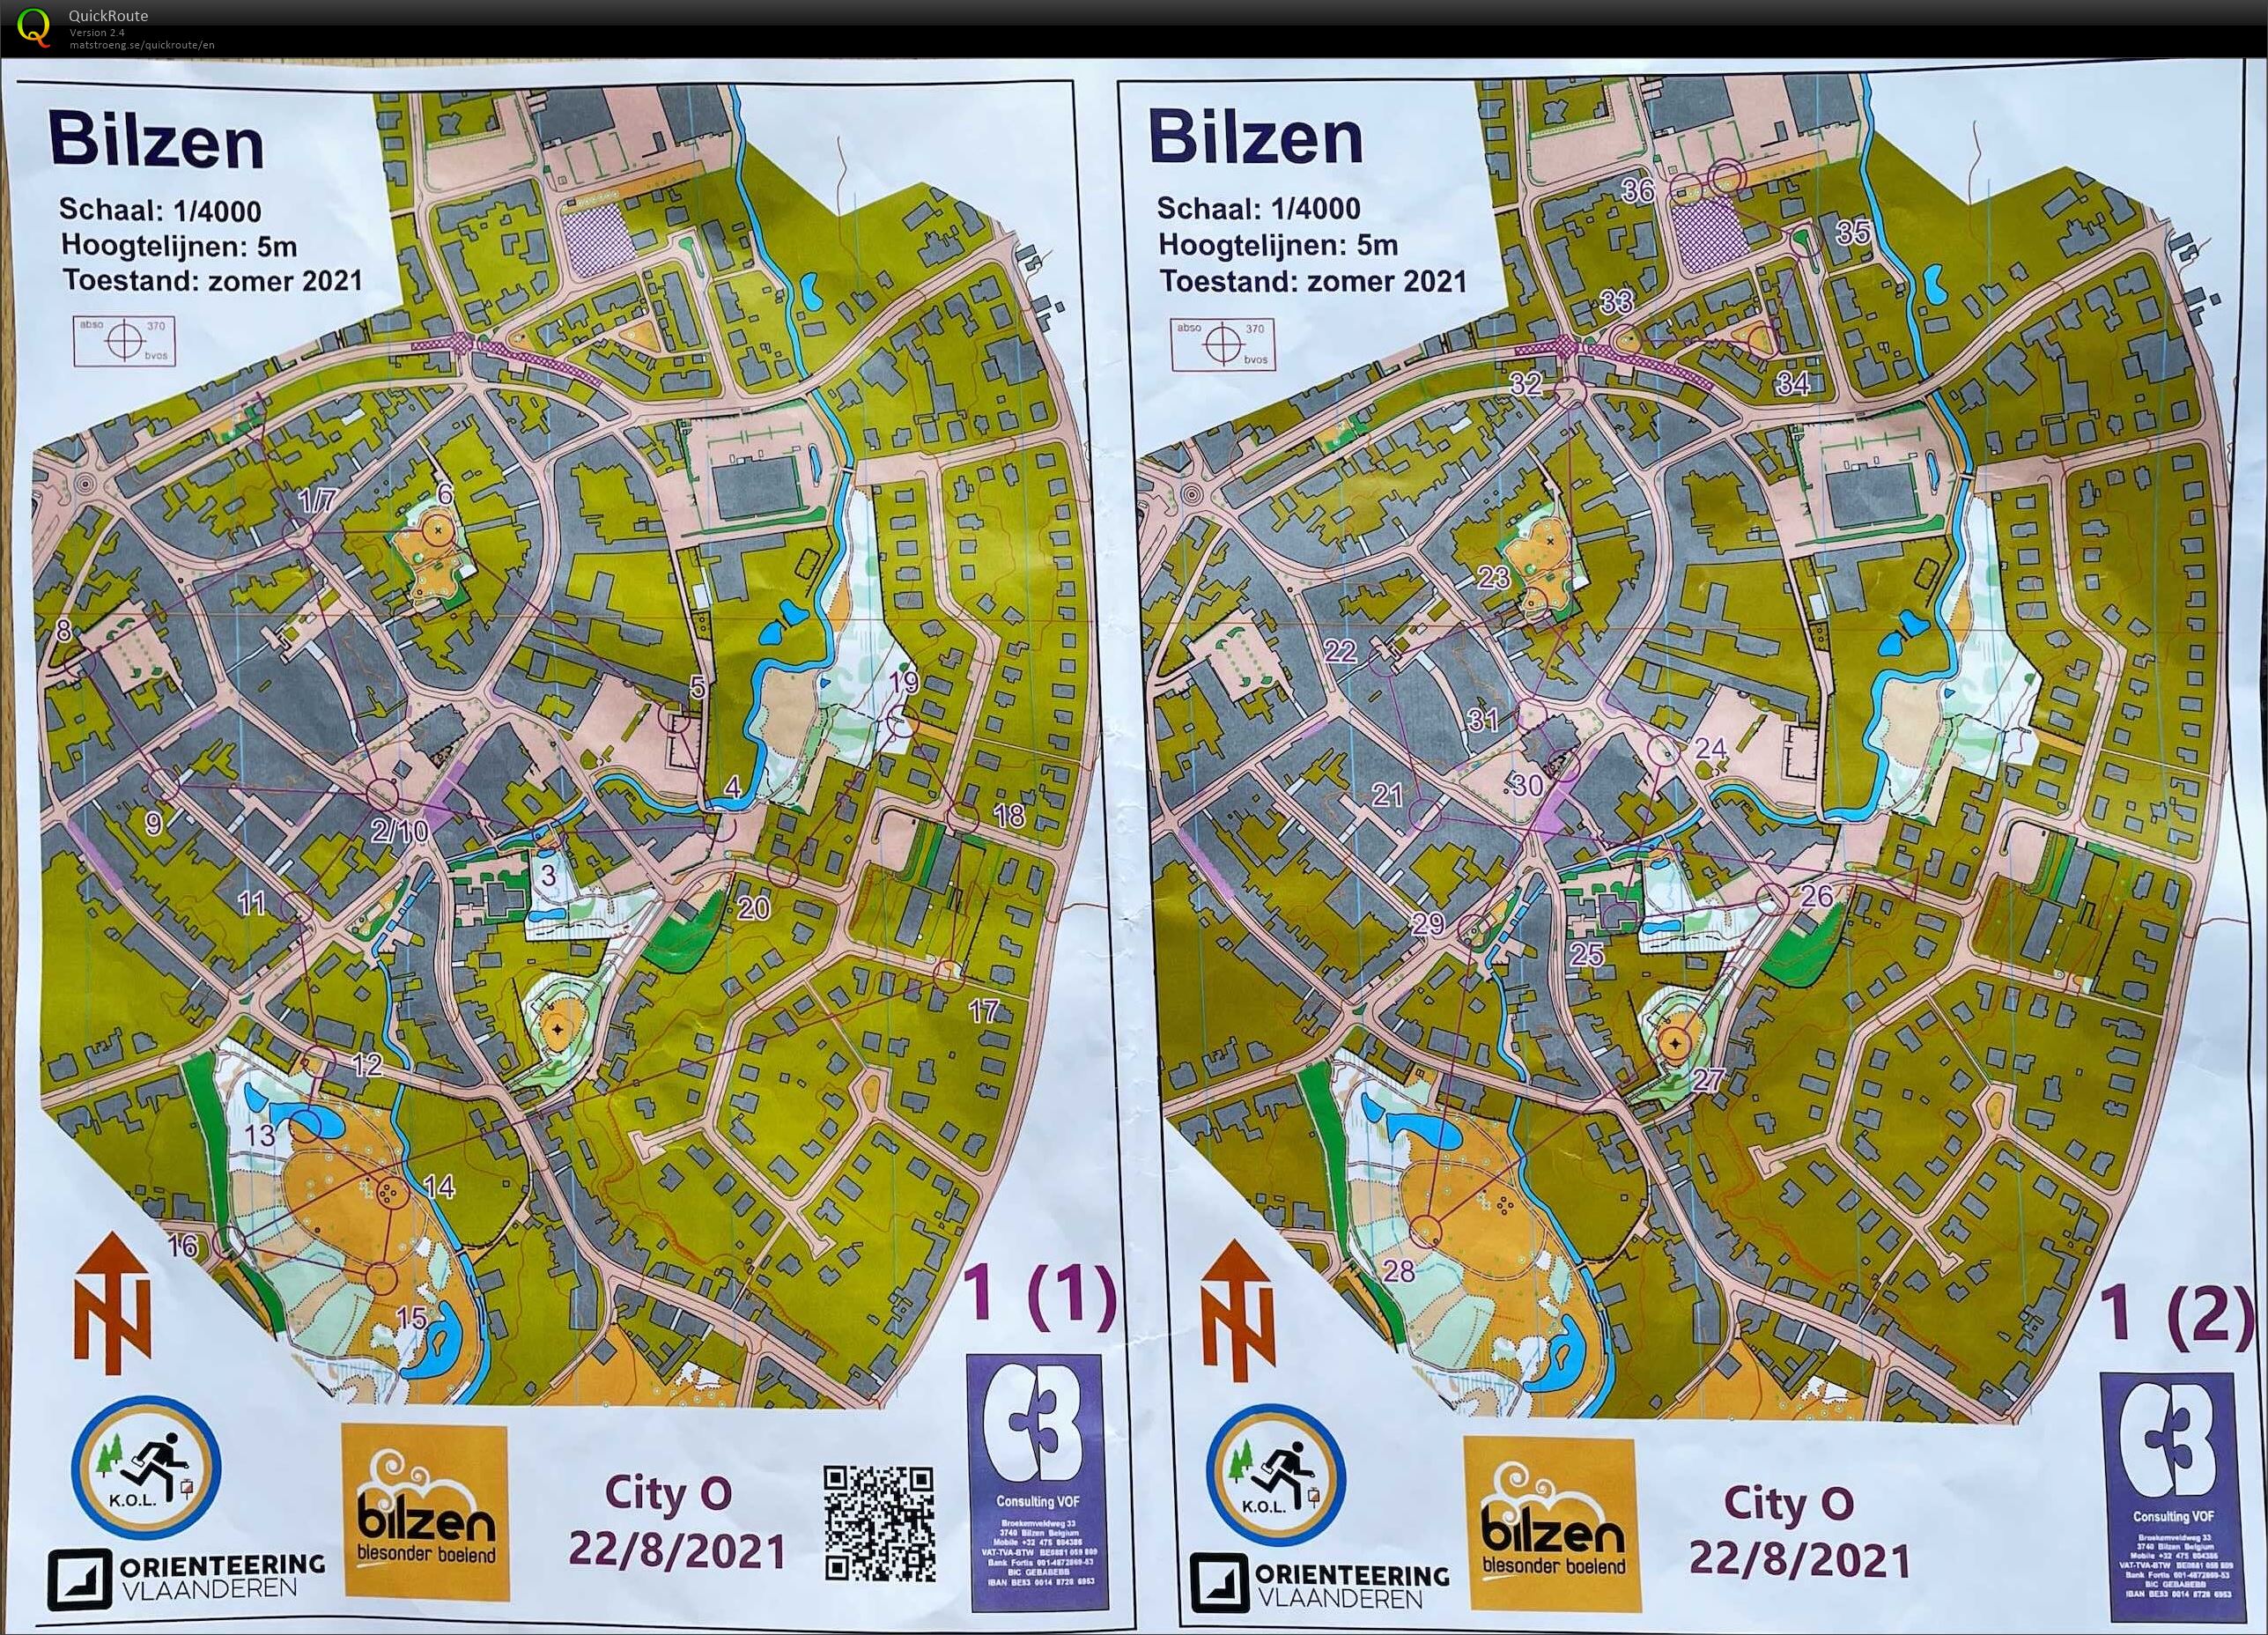 City-O Bilzen (2021-08-22)